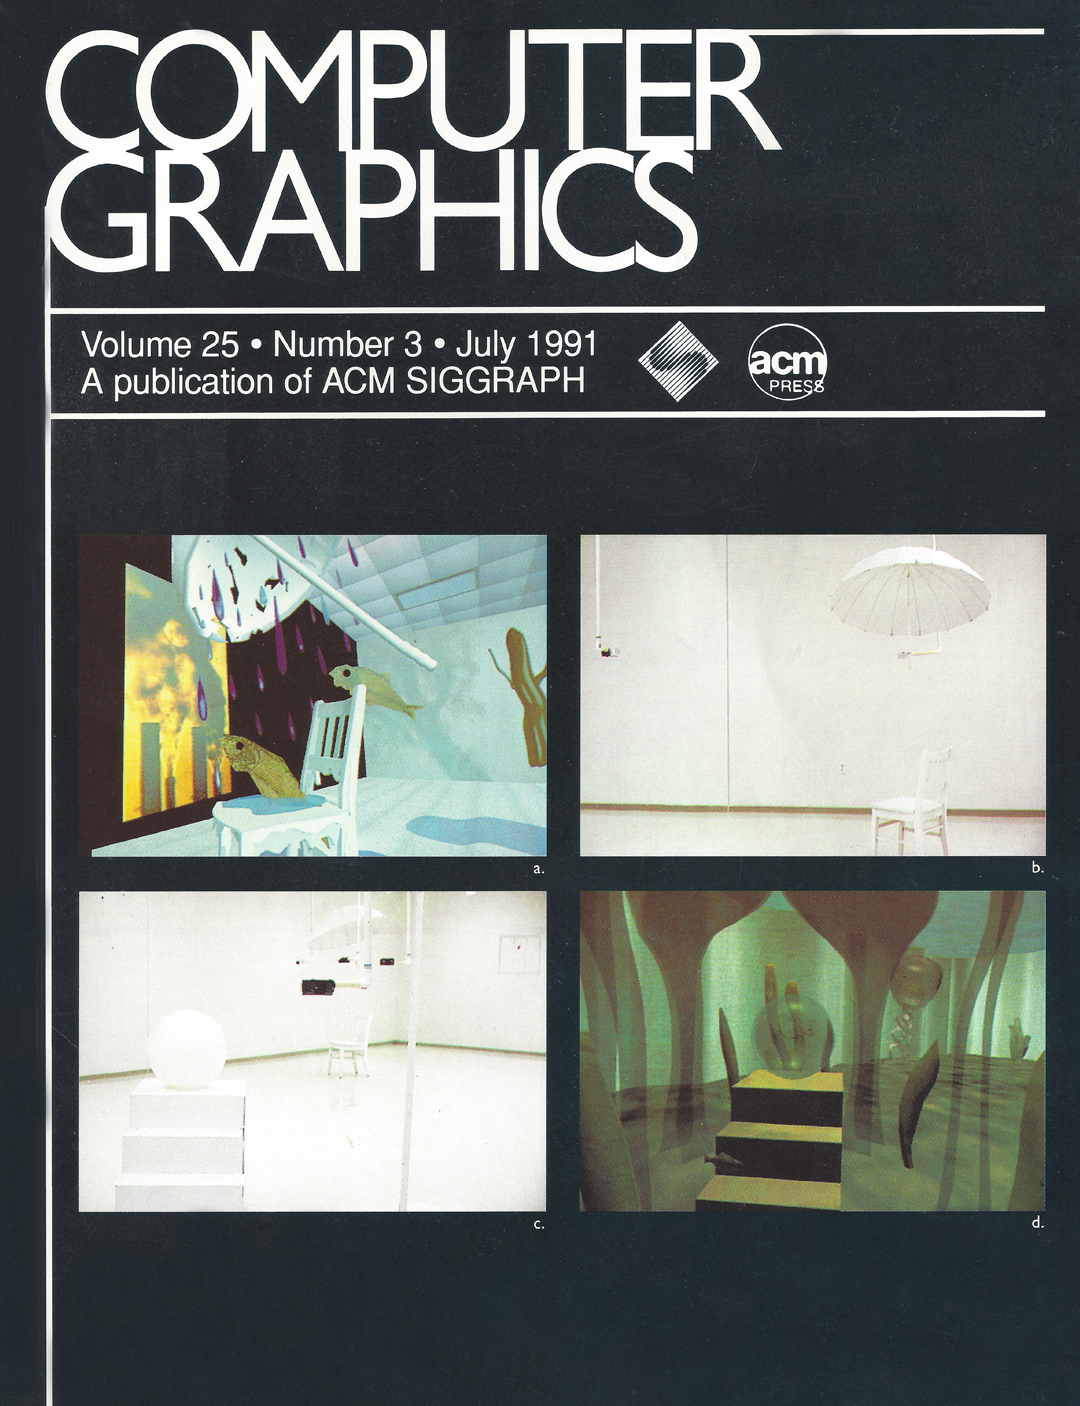 ©A publication of ACM SIGGRAPH